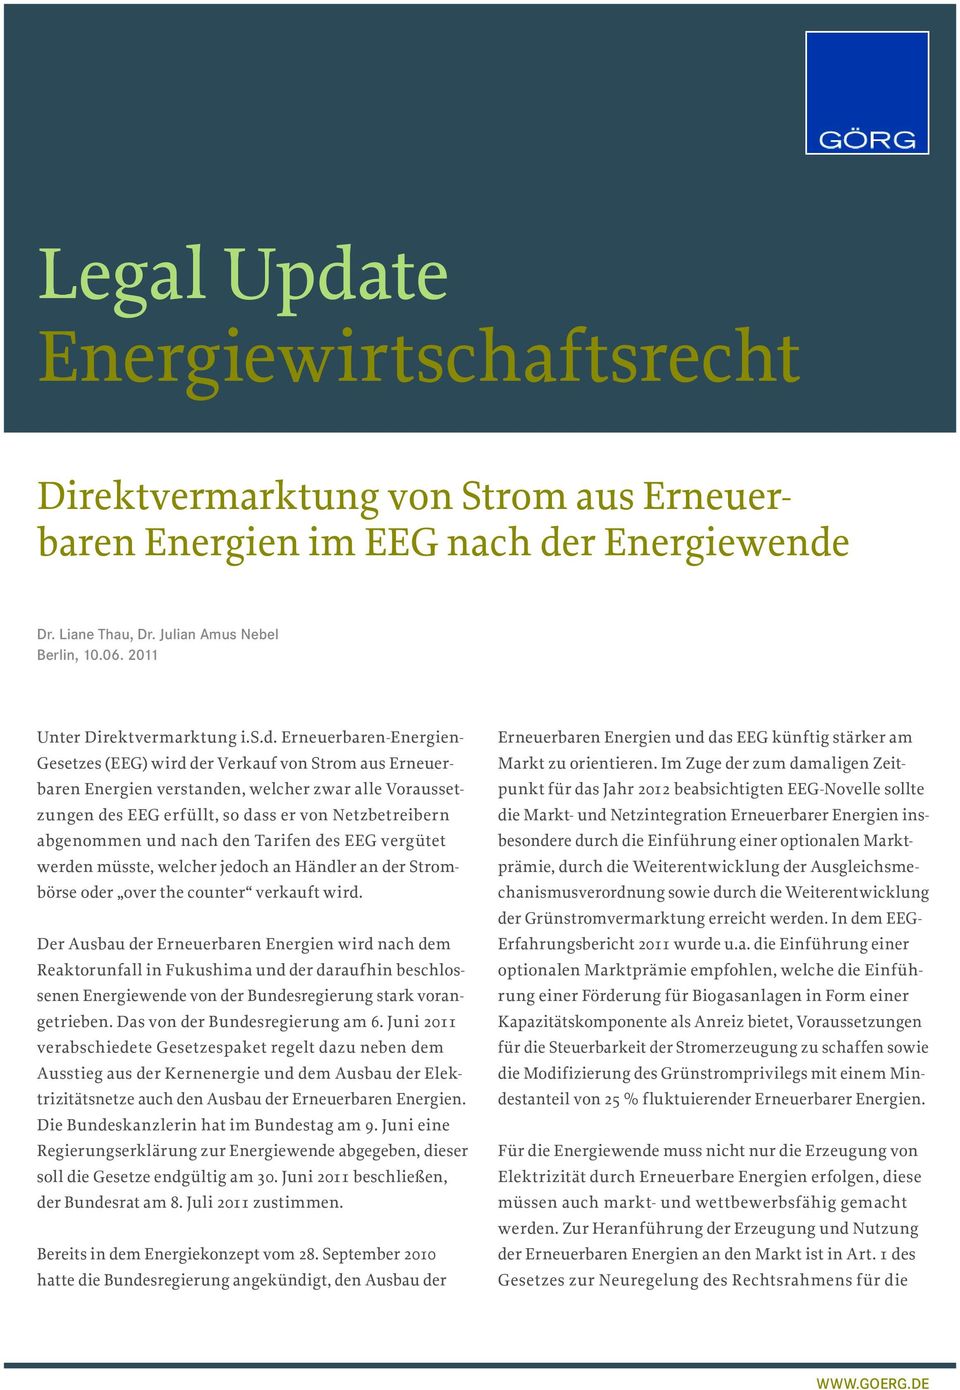 Erneuerbaren-Energien- Gesetzes (EEG) wird der Verkauf von Strom aus Erneuerbaren Energien verstanden, welcher zwar alle Voraussetzungen des EEG erfüllt, so dass er von Netzbetreibern abgenommen und